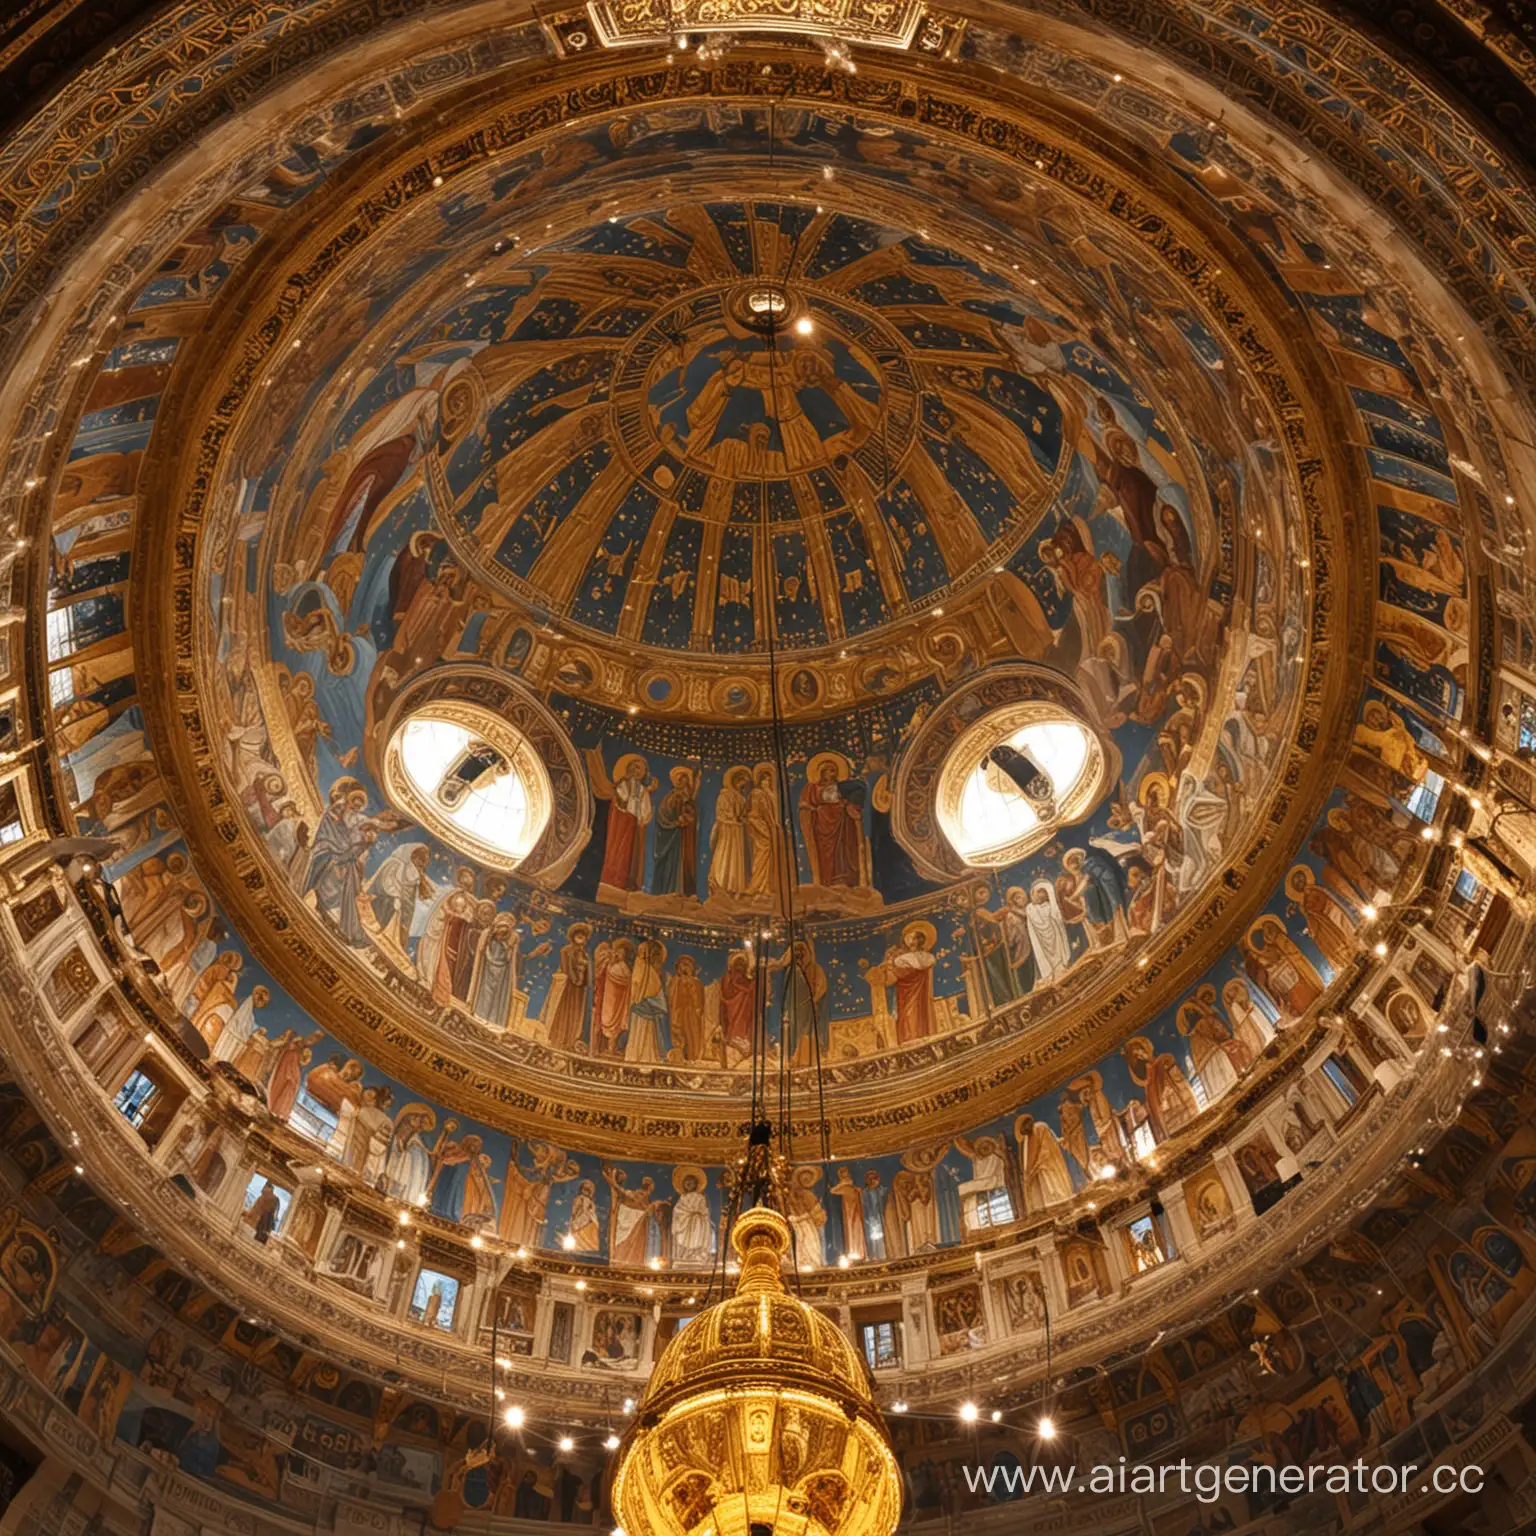 Angelic-Luminance-Byzantine-Dome-Illuminated-by-Angelic-Lamps